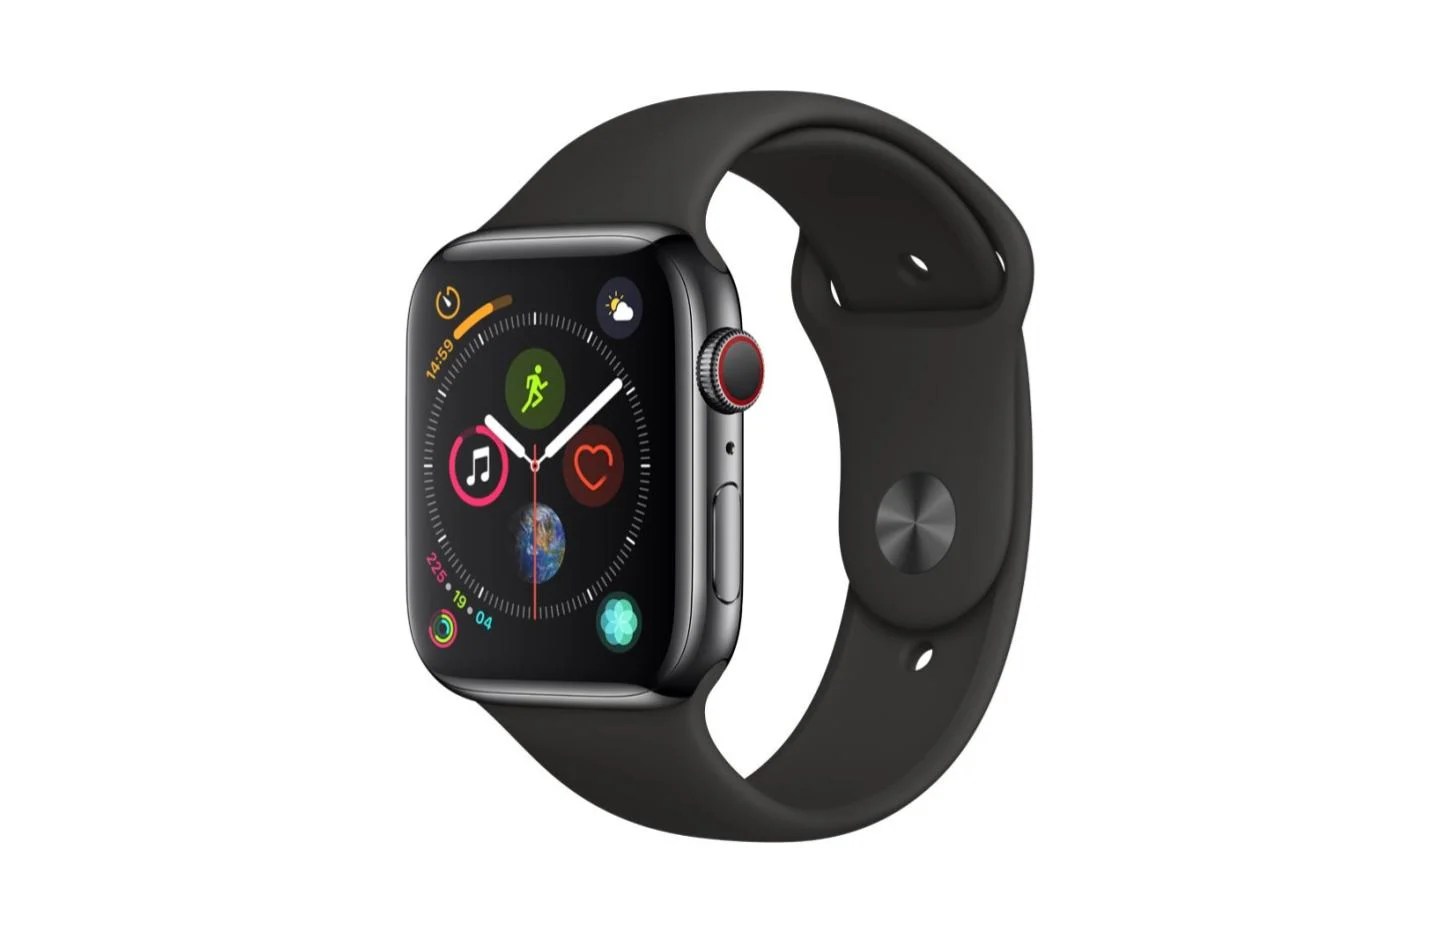 Déstockage : 170 euros de remise pour l’Apple Watch Series 4 (modèle 4G, 44 mm)